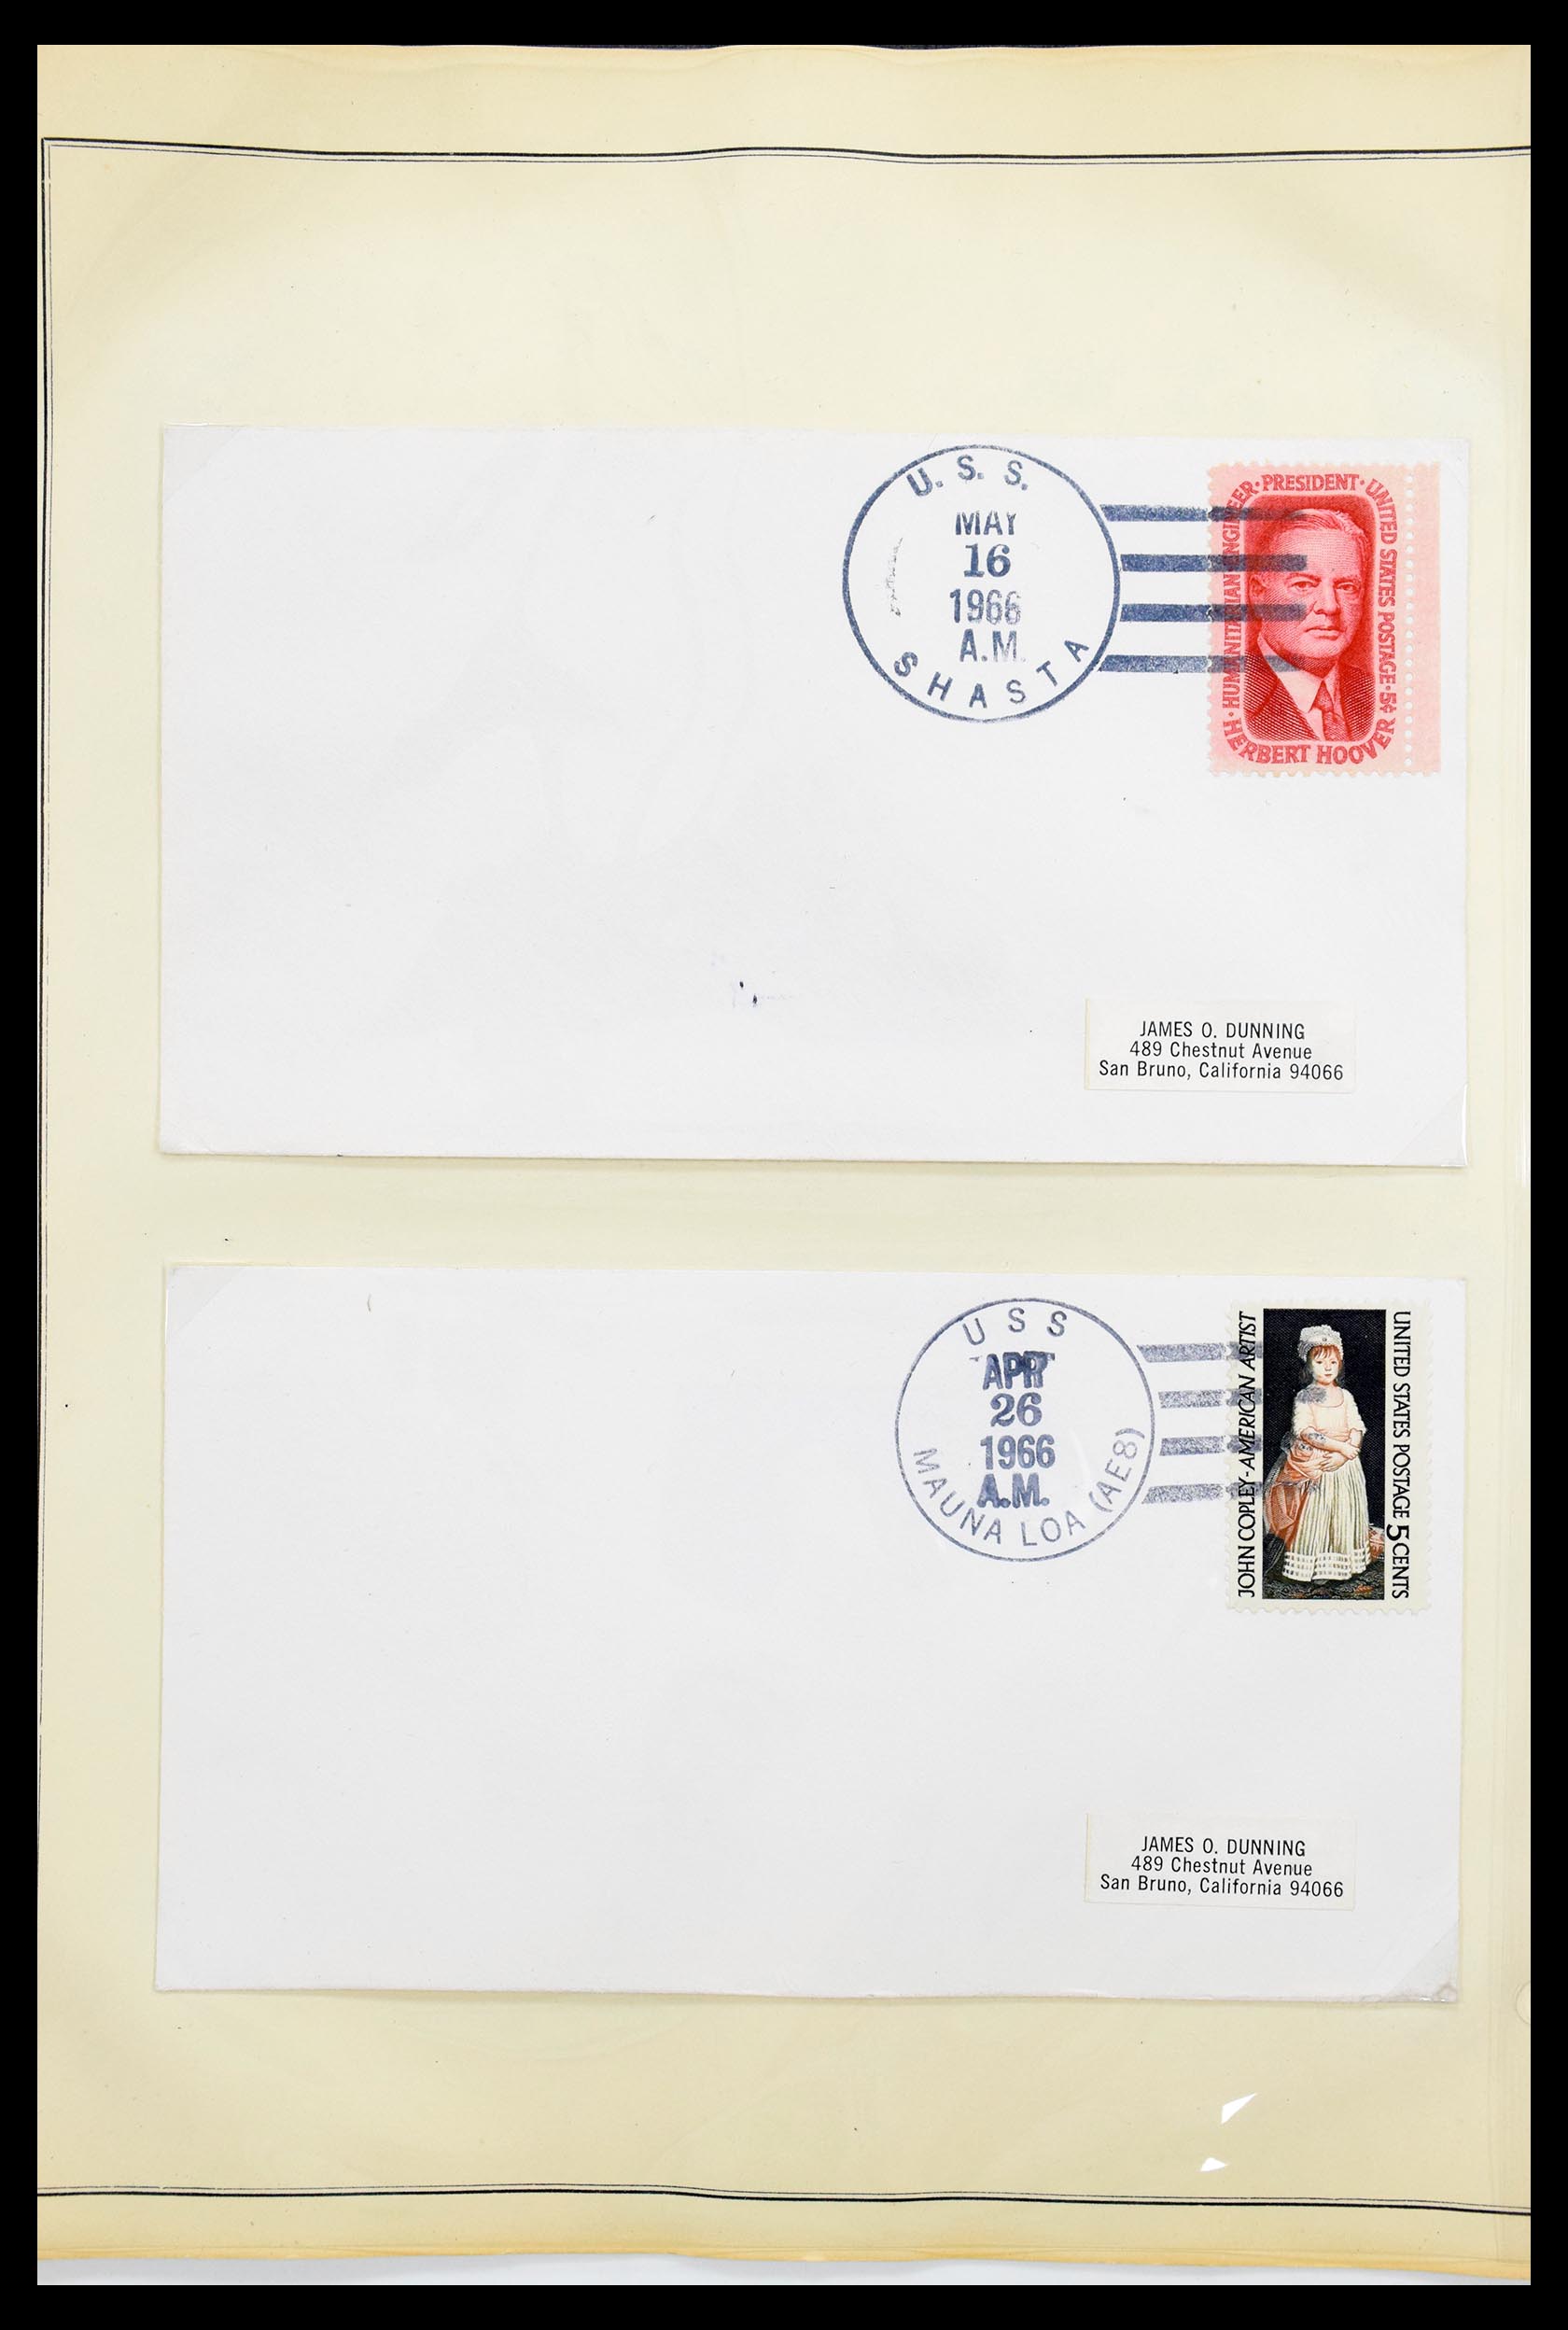 30341 014 - 30341 USA scheepspost brieven 1930-1970.